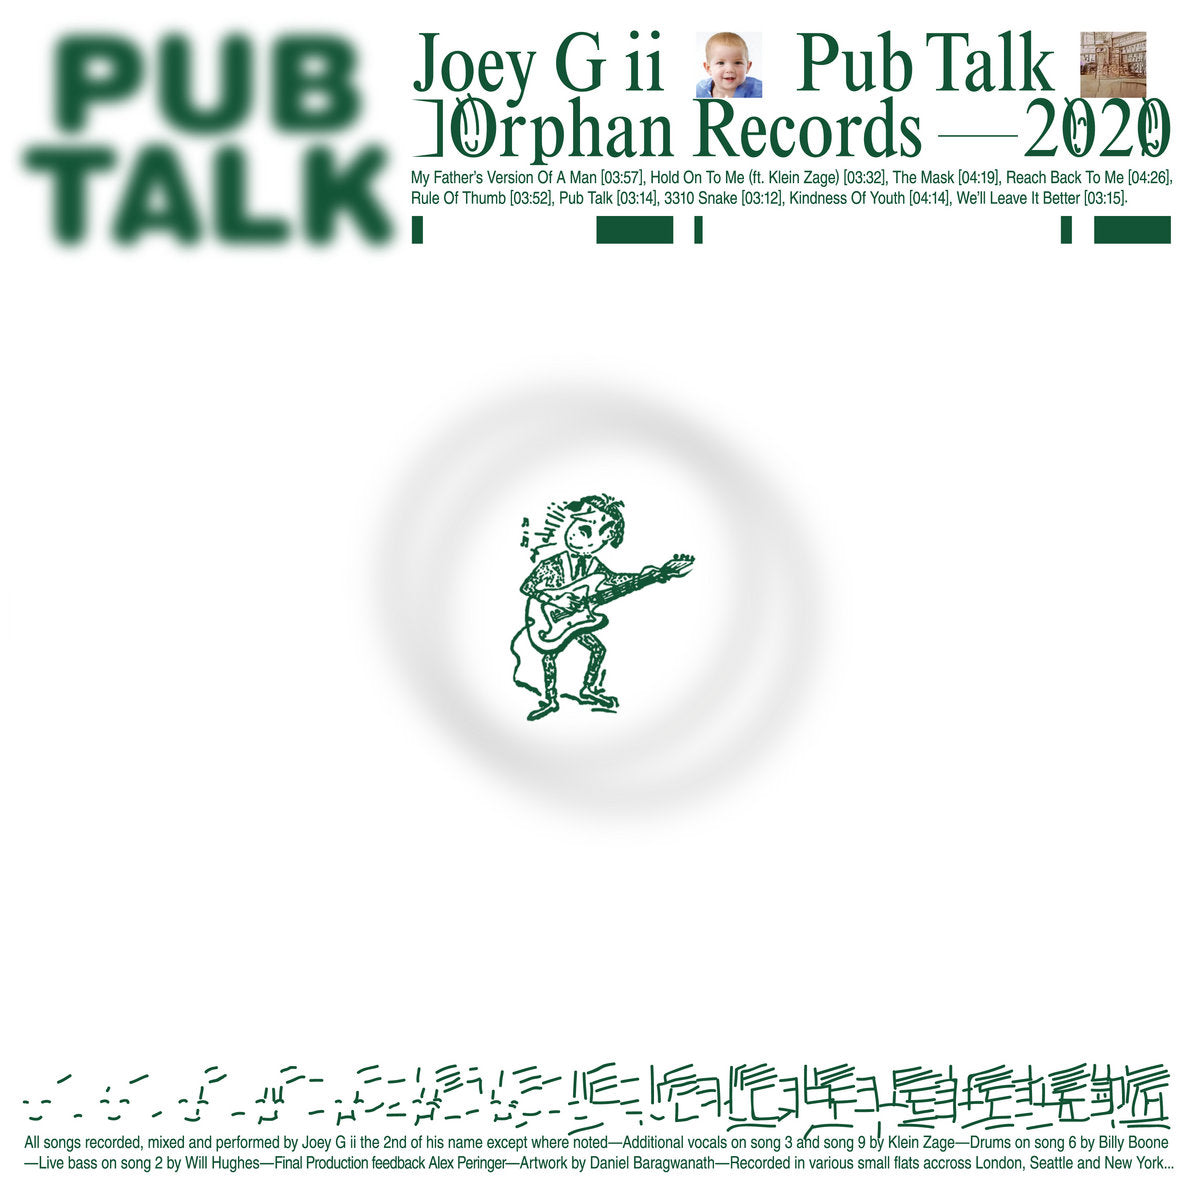 Joey G ii/Pub Talk